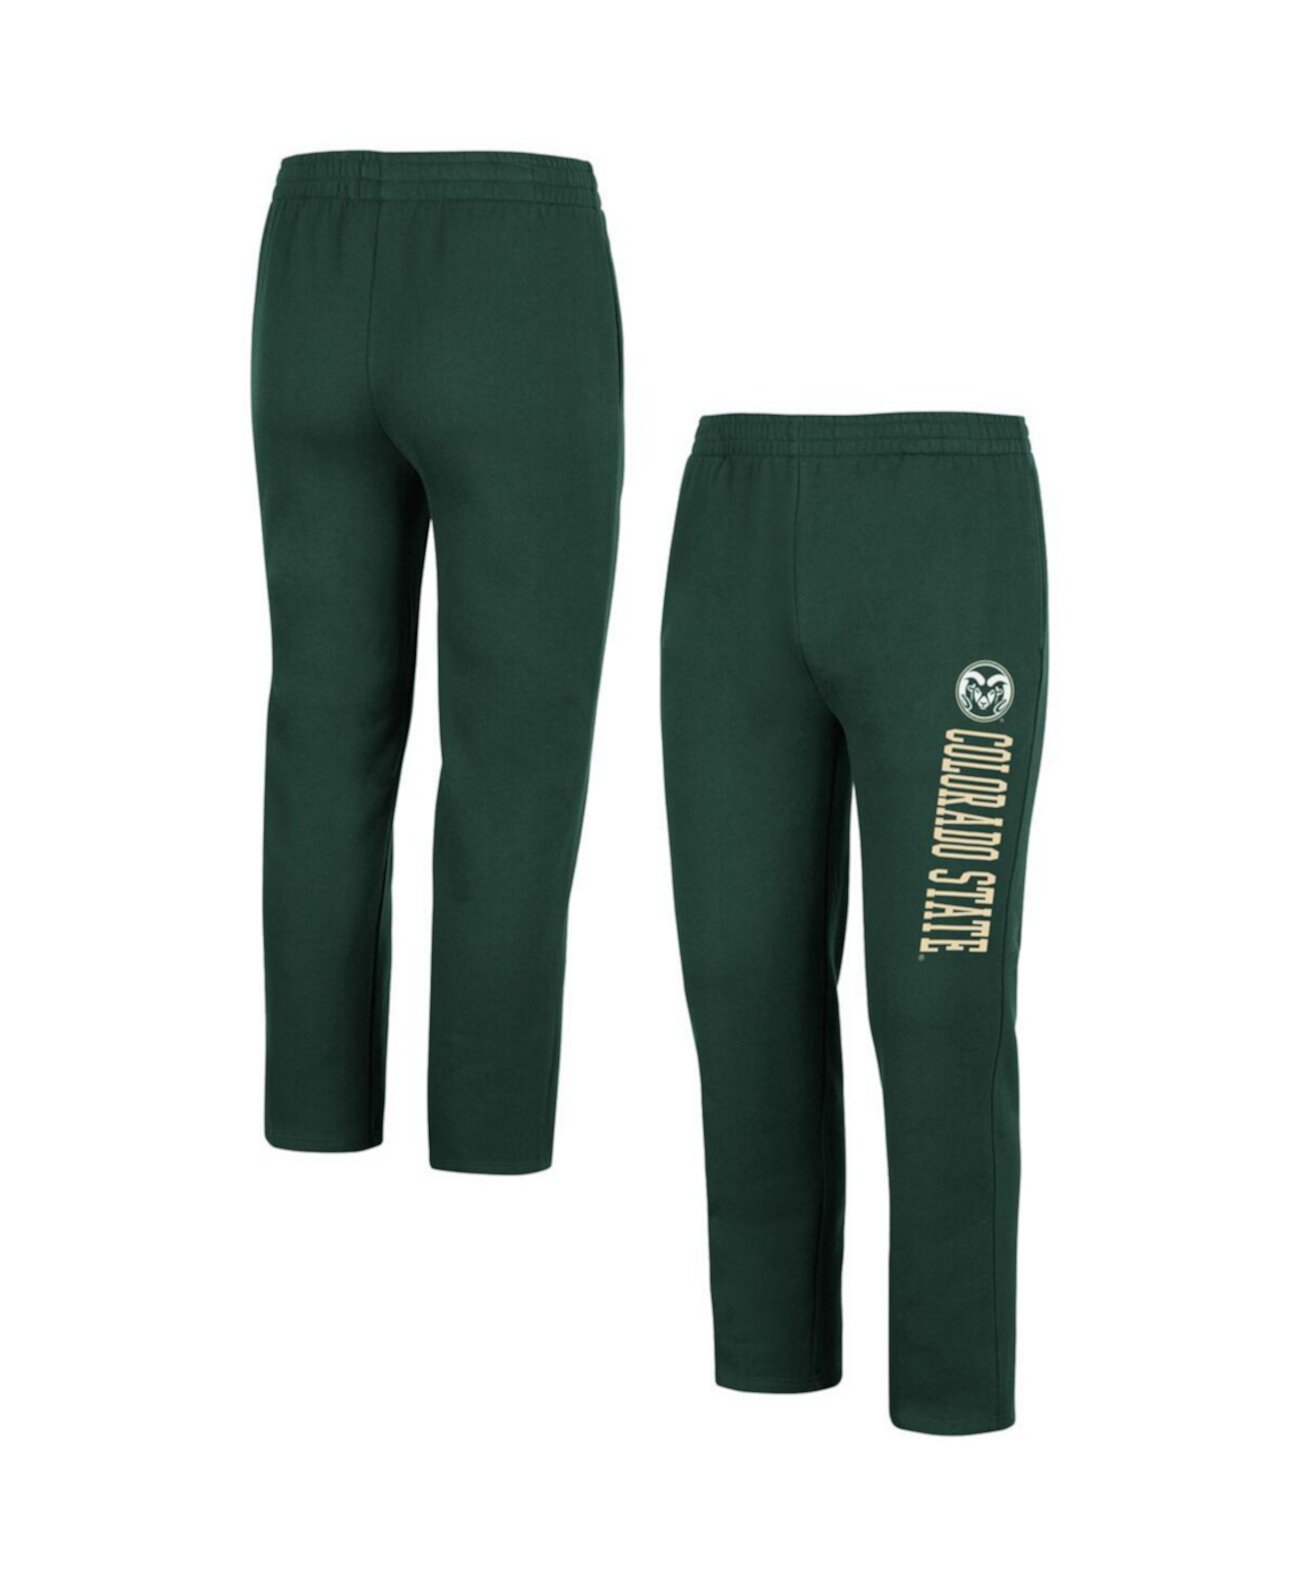 Мужские зеленые флисовые брюки Colorado State Rams Colosseum